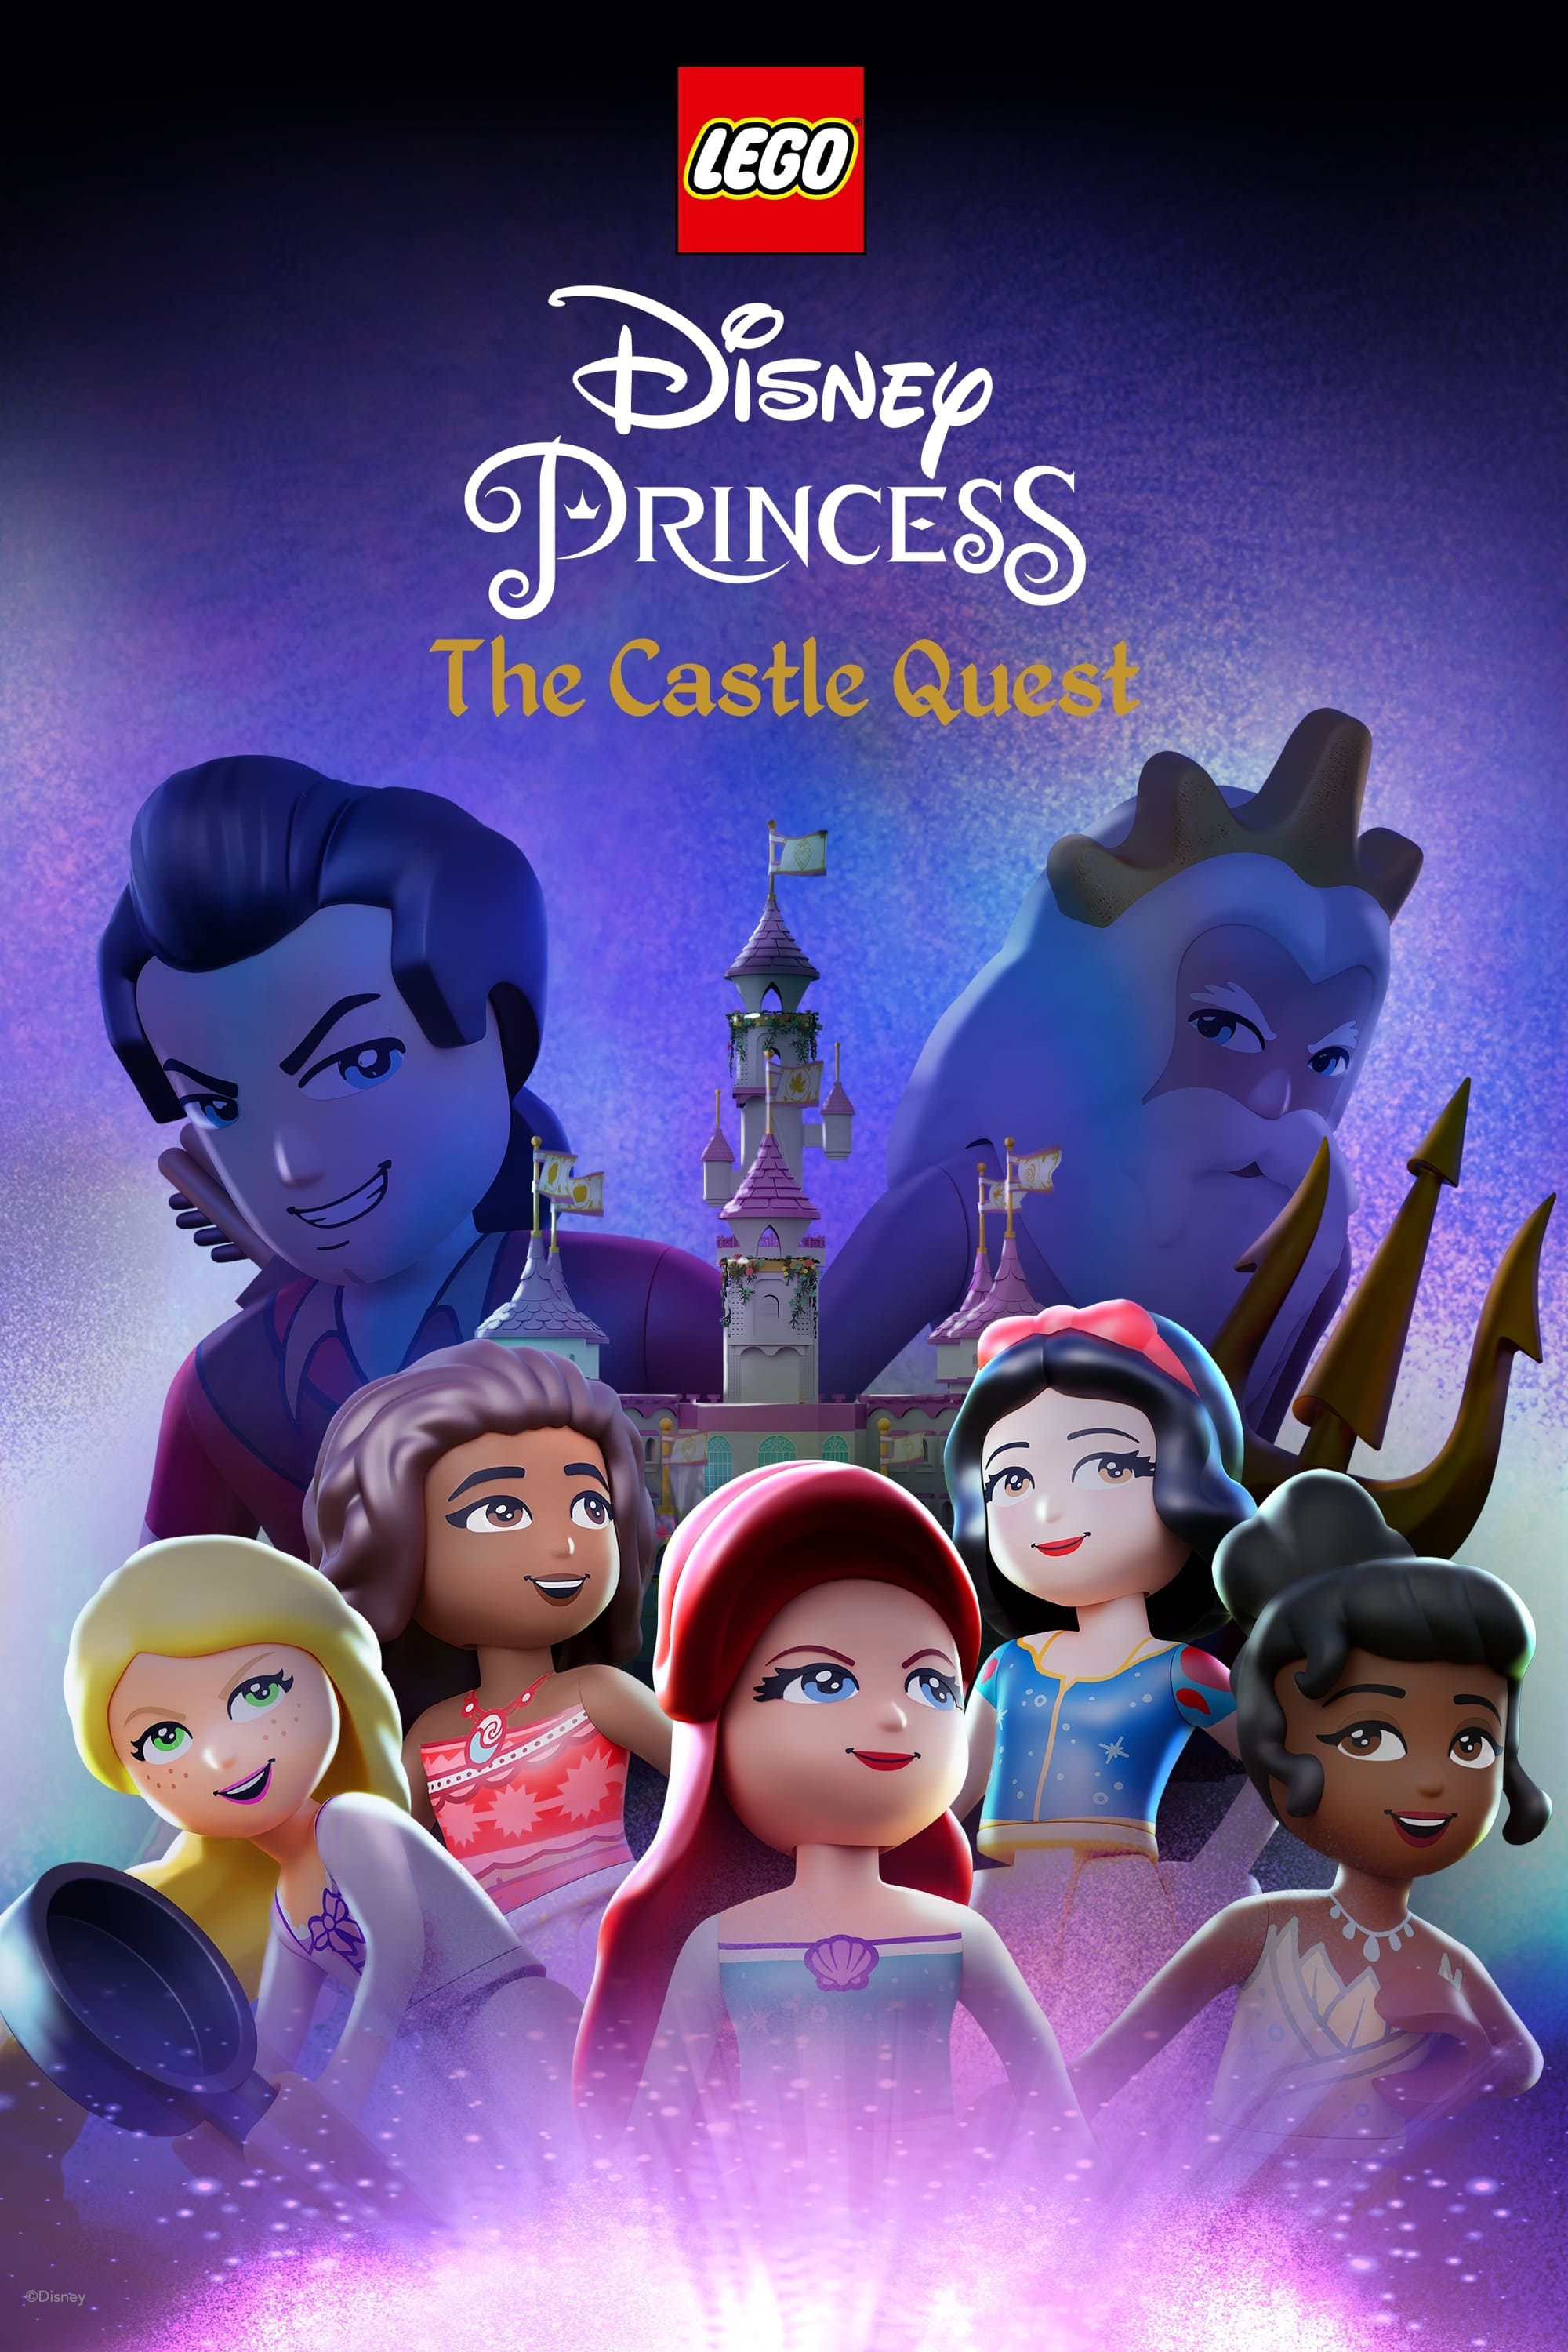 Watch LEGO Disney Princess: The Castle Quest